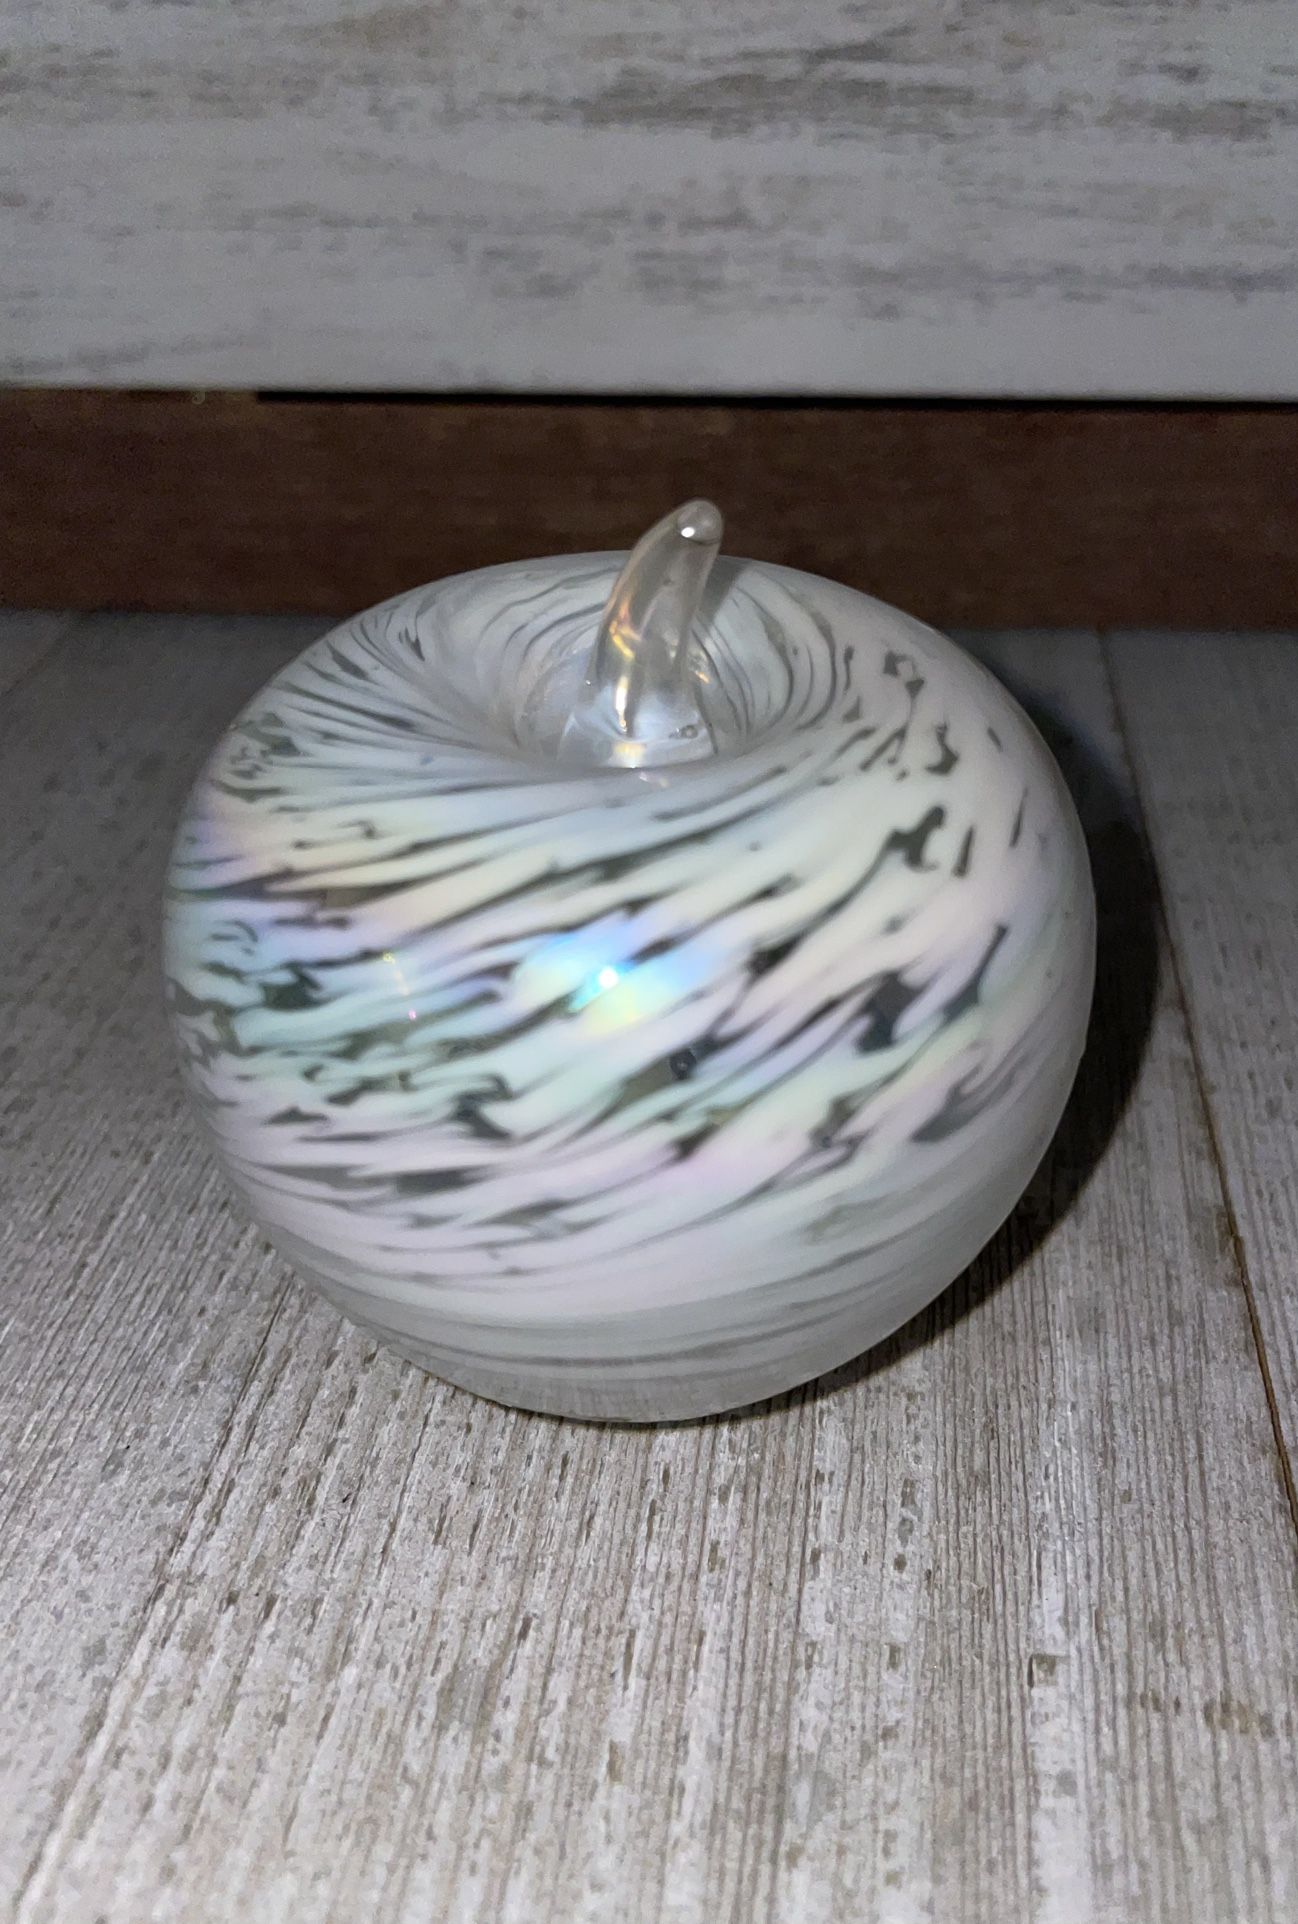 Iridescent White Swirl Apple Paperweight